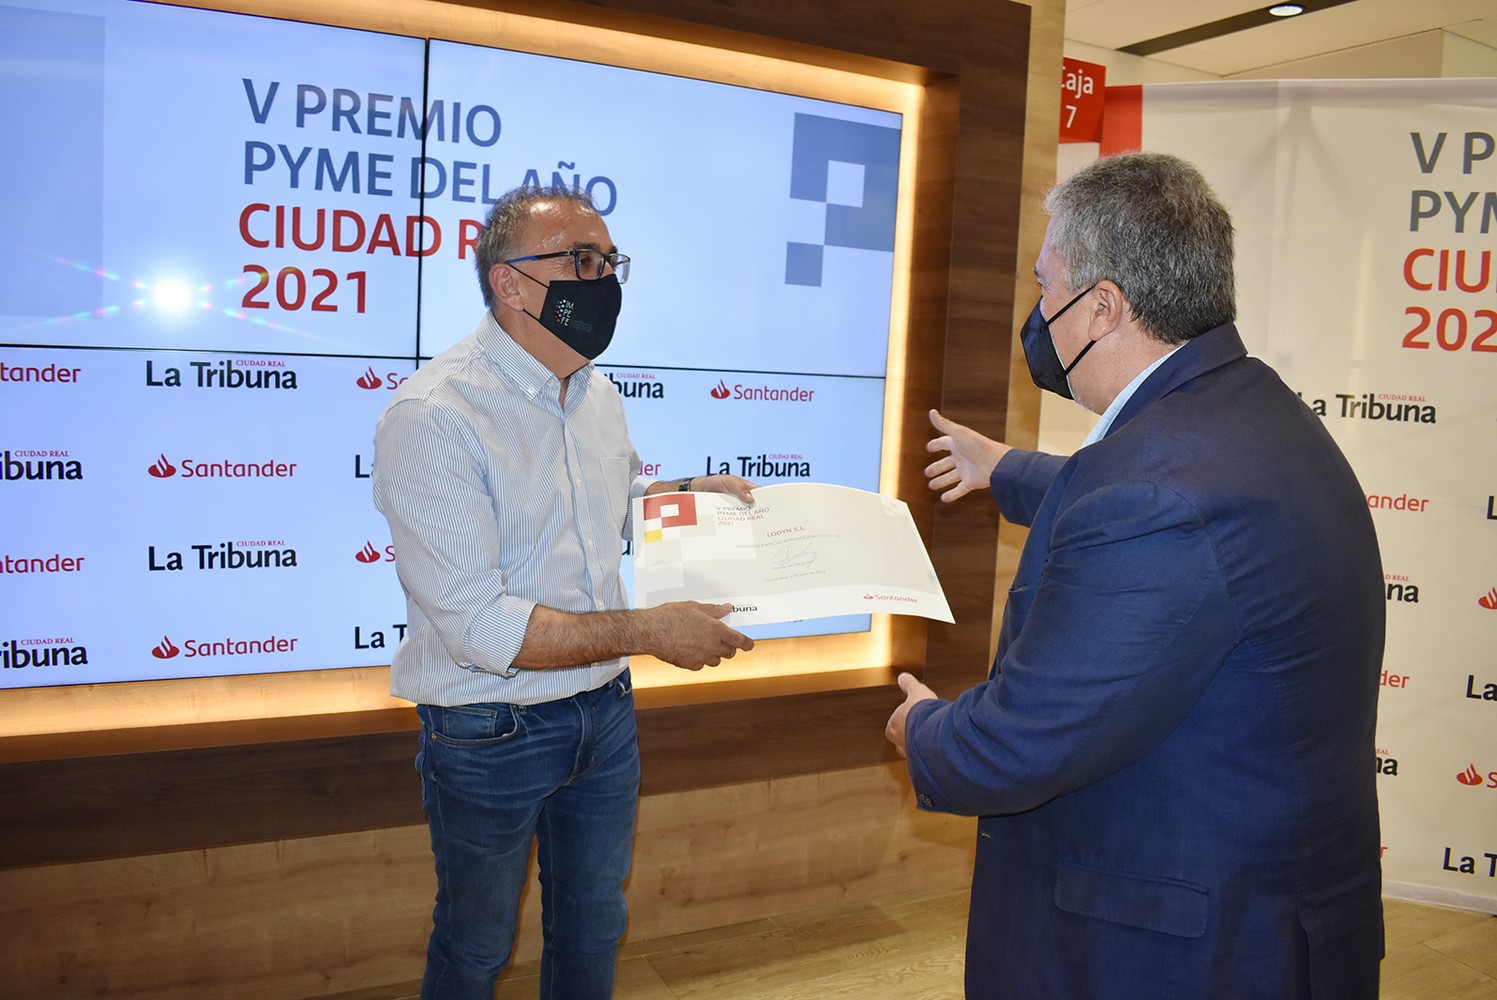 V Premio Pyme del año Ciudad Real 2021